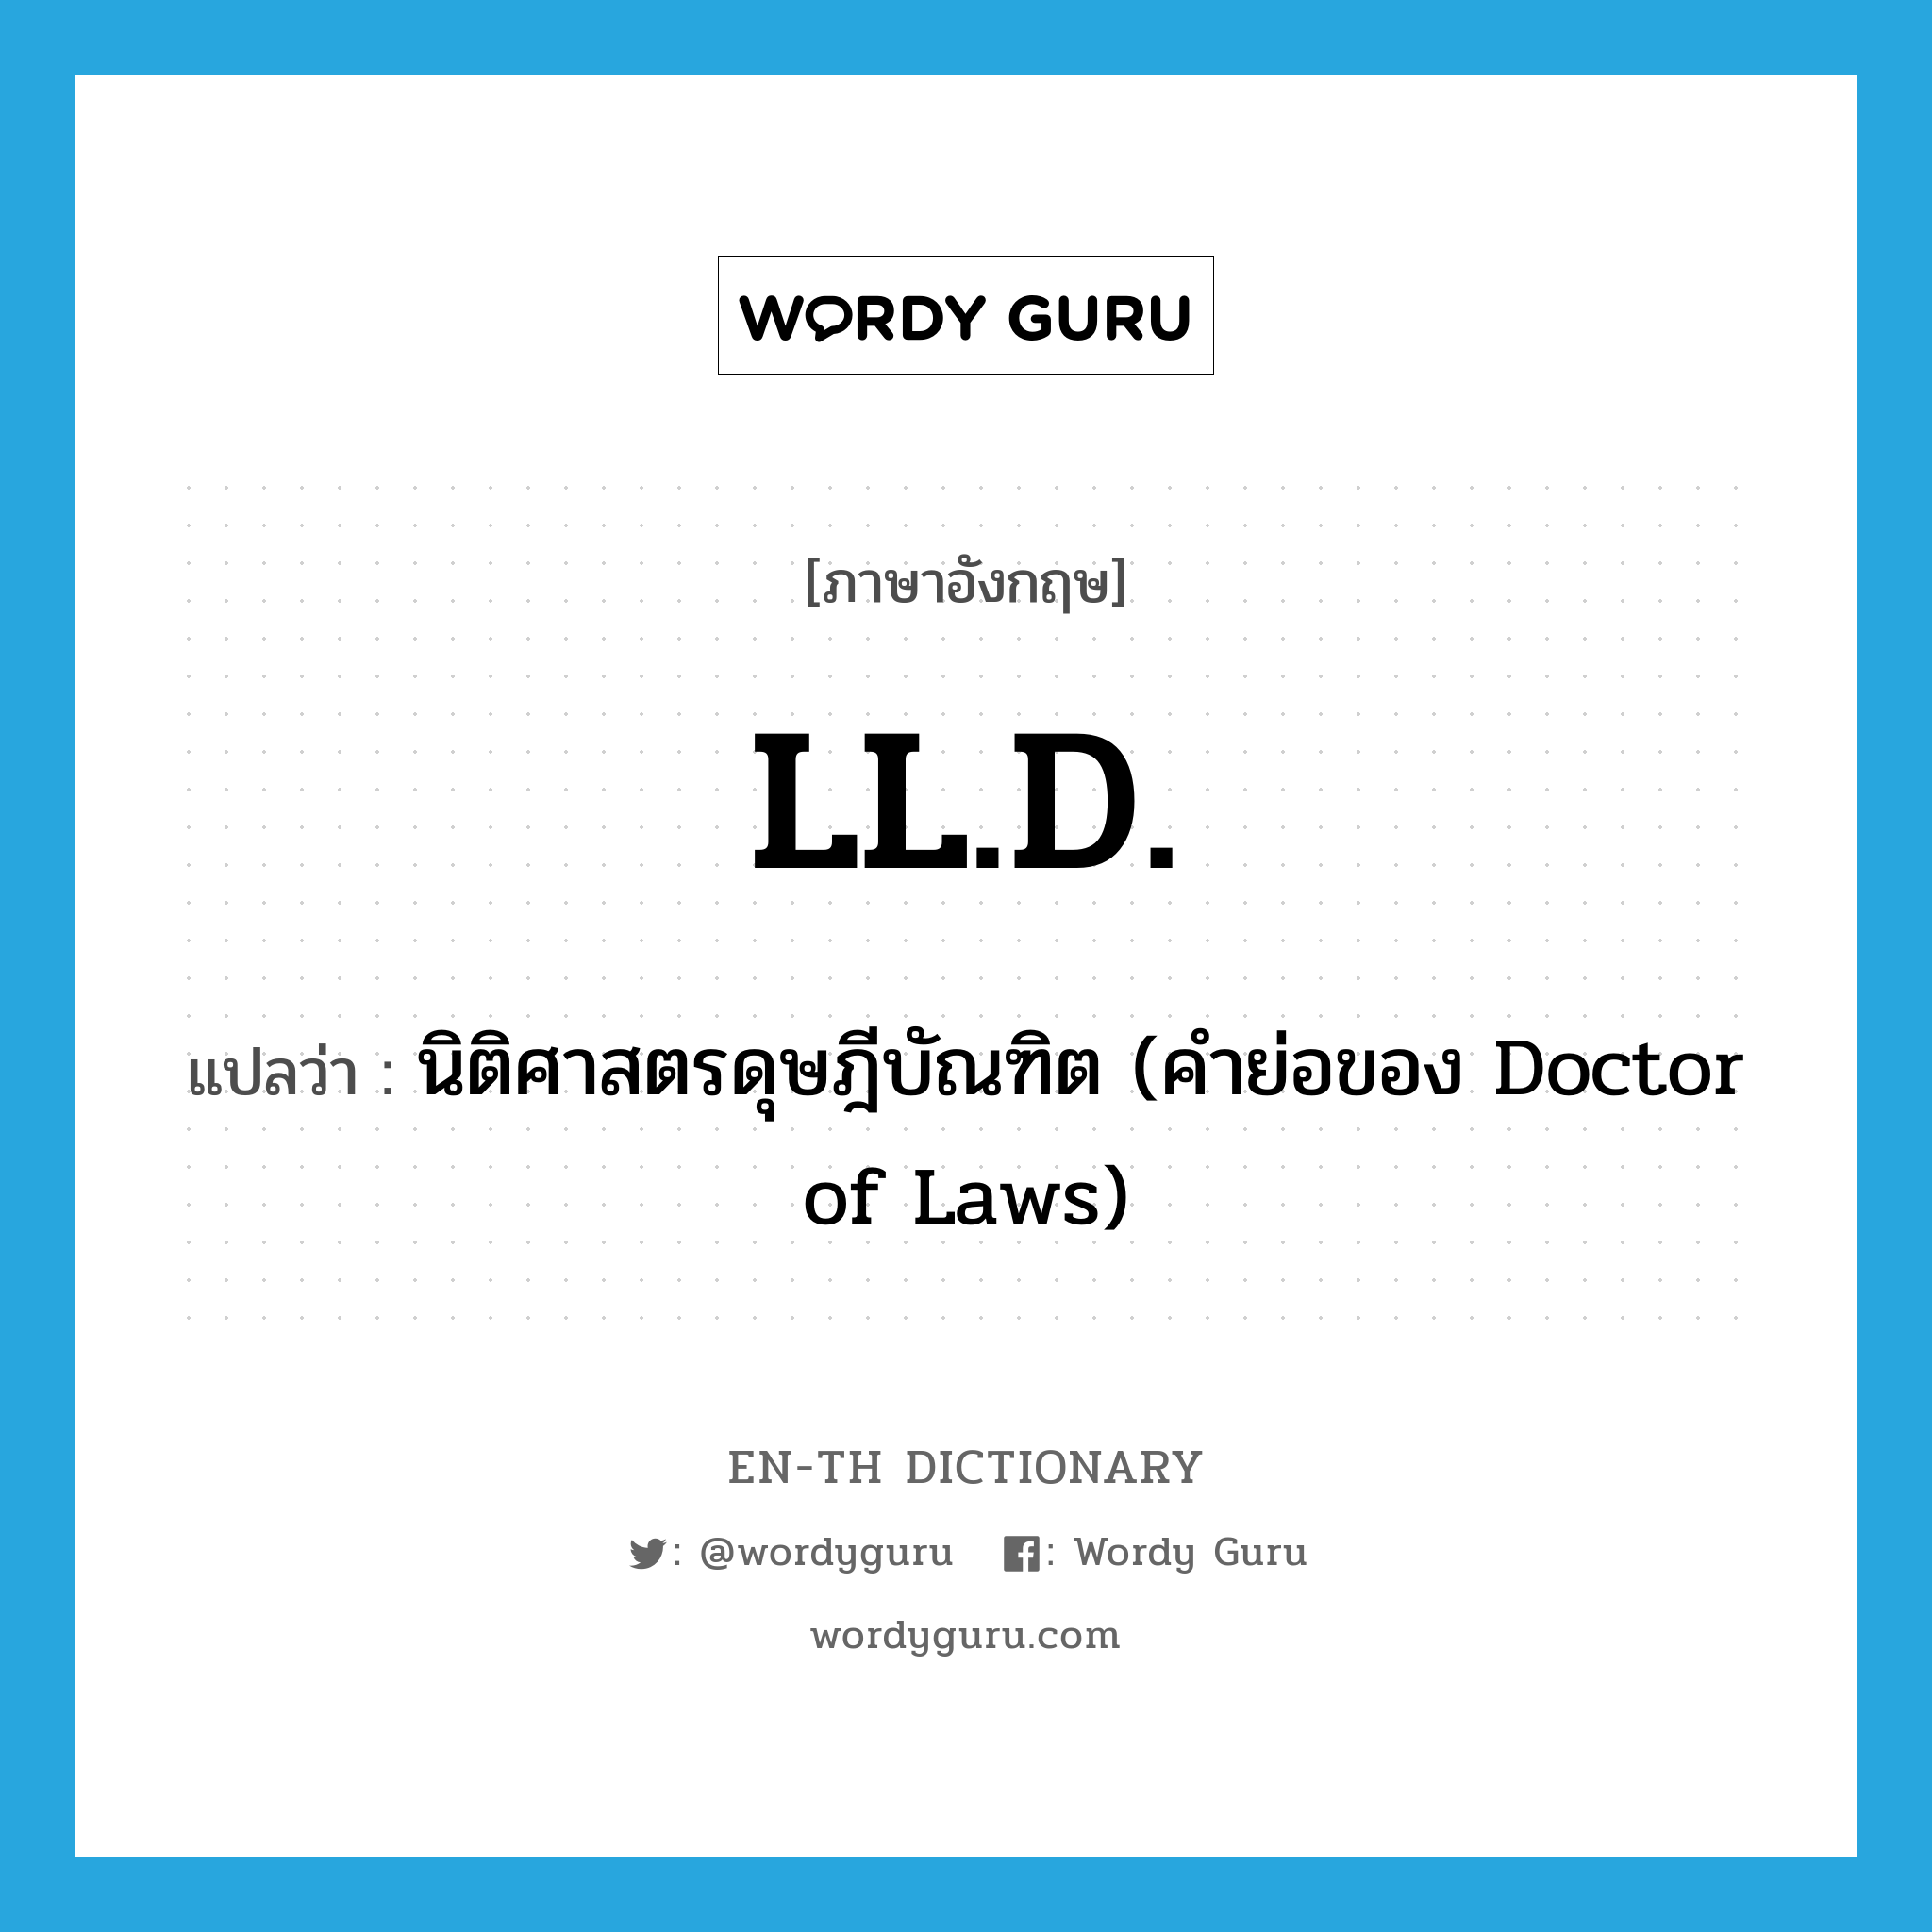 นิติศาสตรดุษฎีบัณฑิต (คำย่อของ Doctor of Laws) ภาษาอังกฤษ?, คำศัพท์ภาษาอังกฤษ นิติศาสตรดุษฎีบัณฑิต (คำย่อของ Doctor of Laws) แปลว่า LL.D. ประเภท ABBR หมวด ABBR